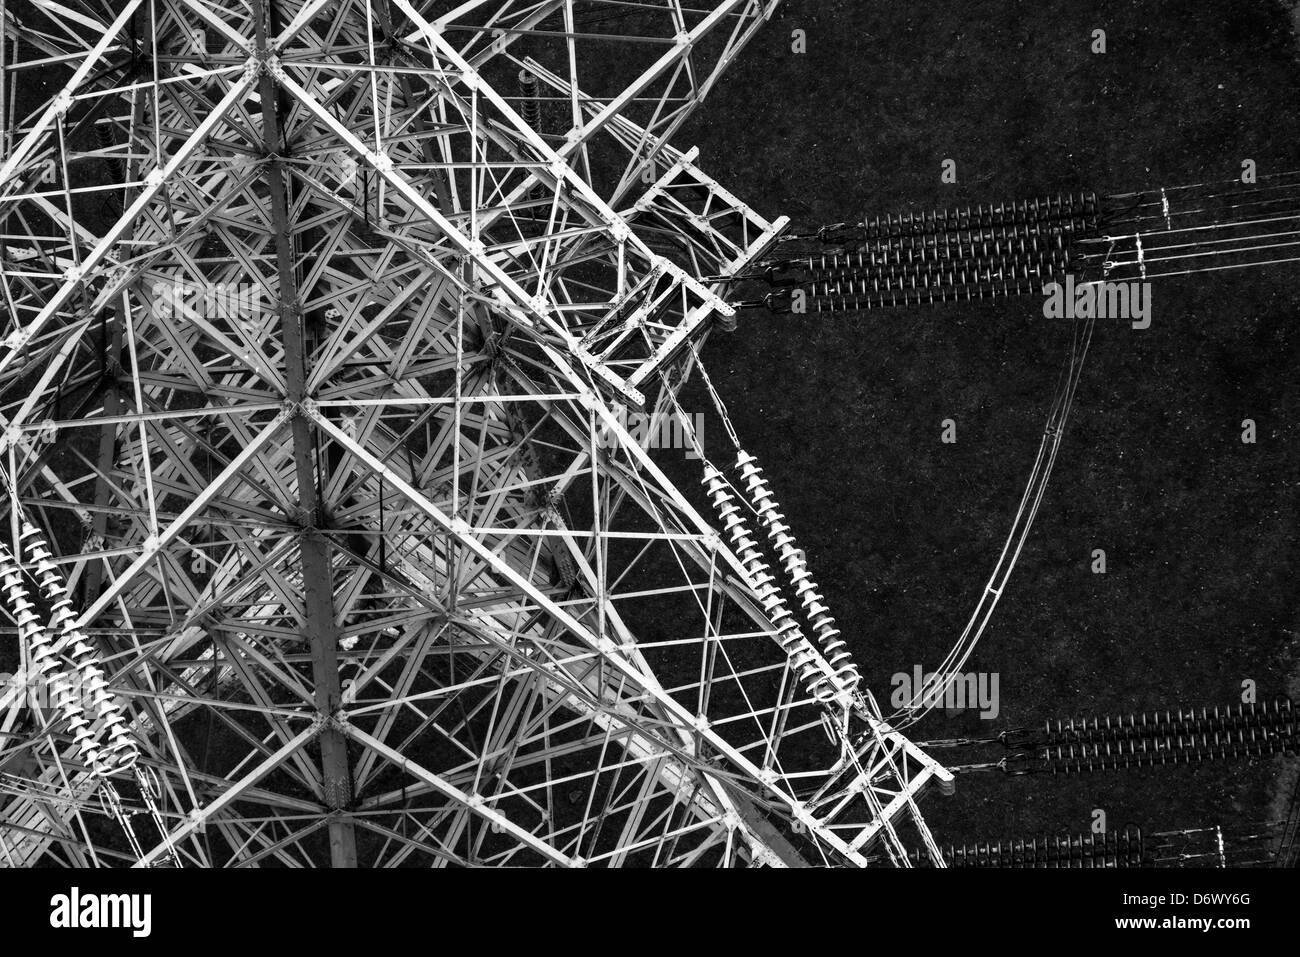 Schwarze und weiße Luftaufnahme zeigt Details Stromleitungen und Pylon hautnah Stockfoto